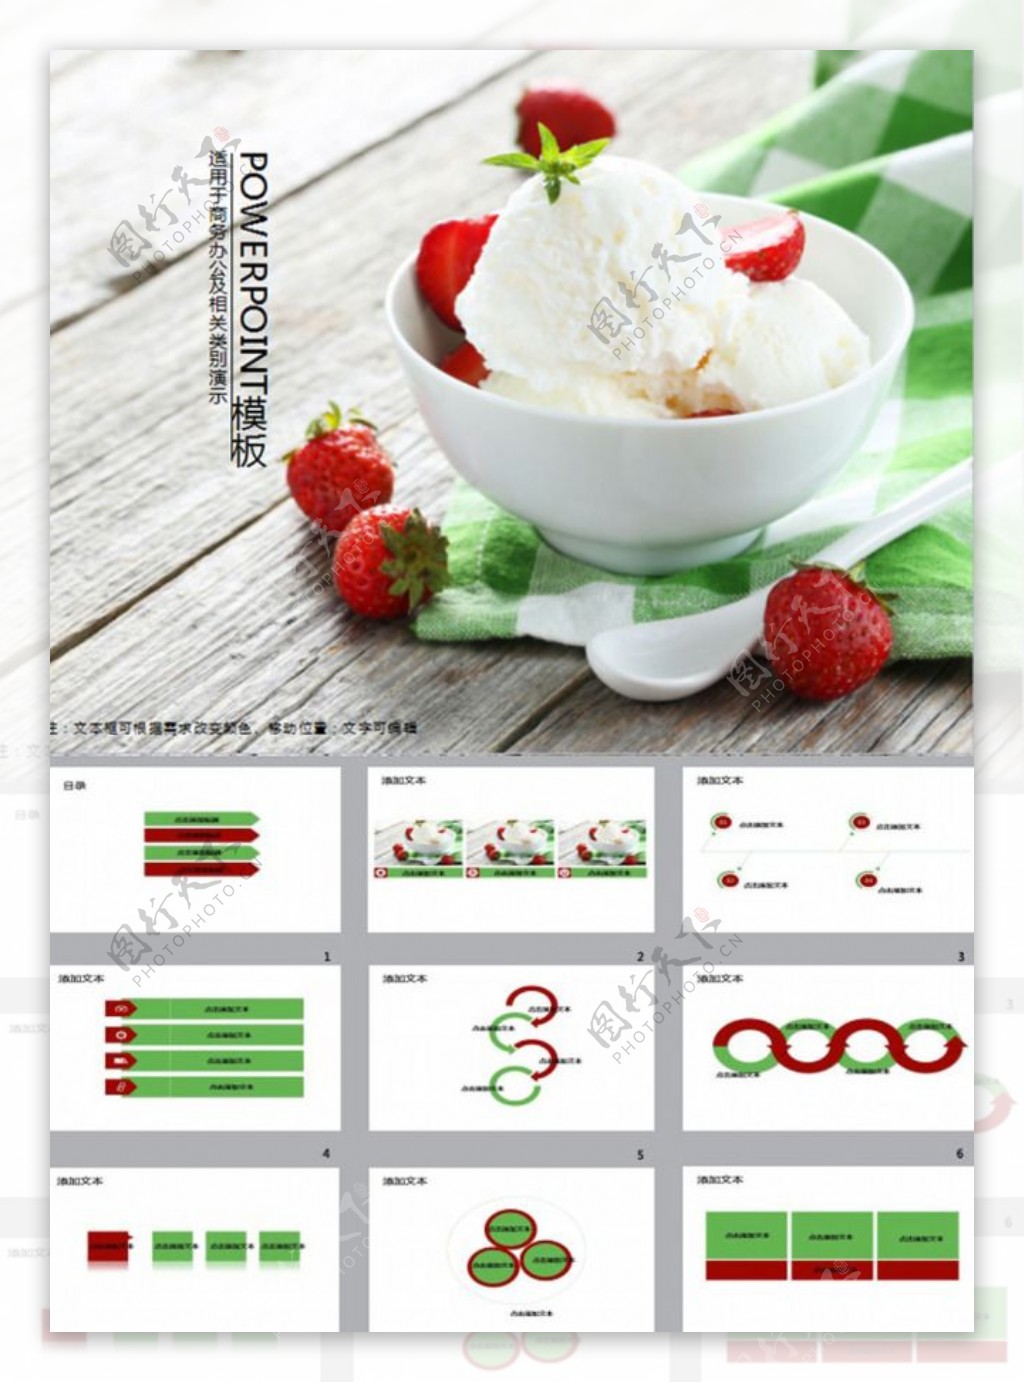 冰淇淋图片素材免费下载 - 觅知网